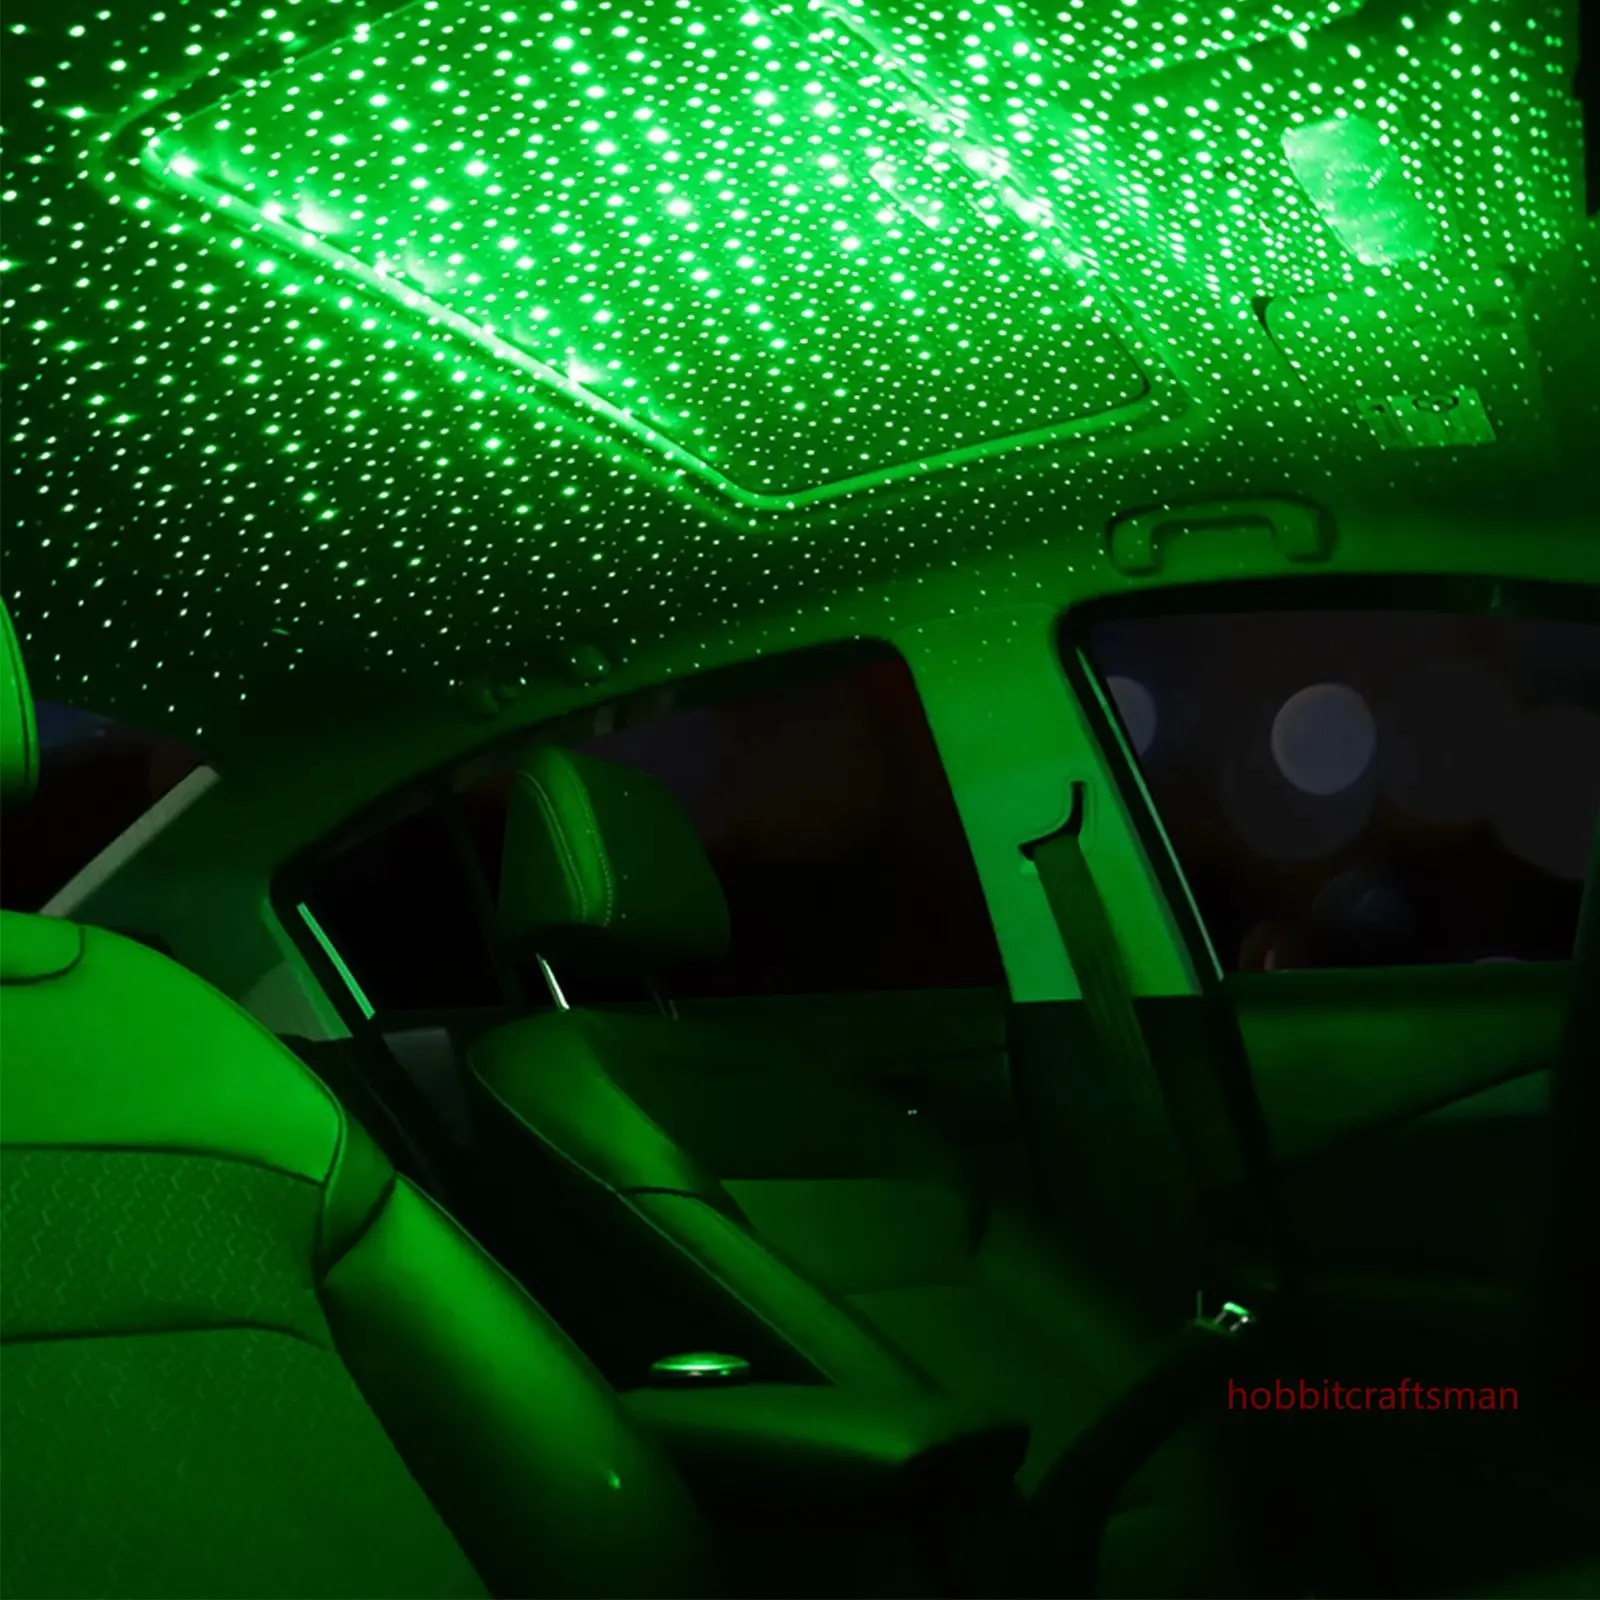 Mini LED dachu samochodu gwiazda noc światło projektor atmosfera Galaxy lampa USB dekoracyjne regulowane dla Auto dachu wystrój sufitu